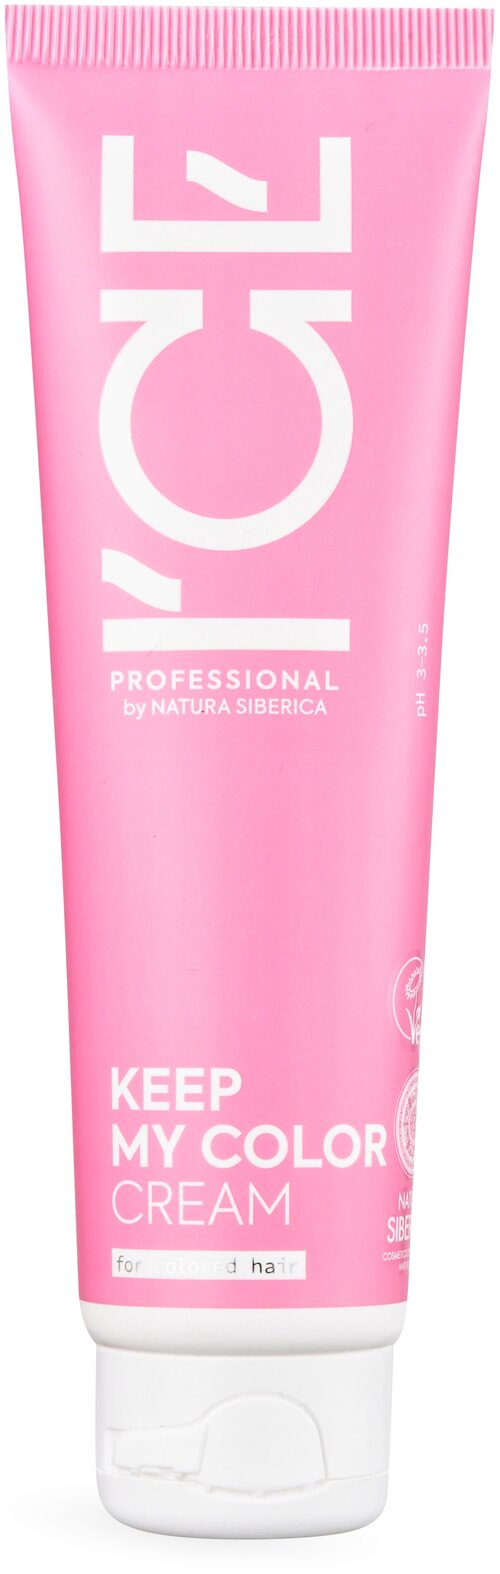 ICE PROFESSIONAL by NATURA SIBERICA KEEP MY COLOR CREAM / Крем для окрашенных и тонированных волос, 100 мл